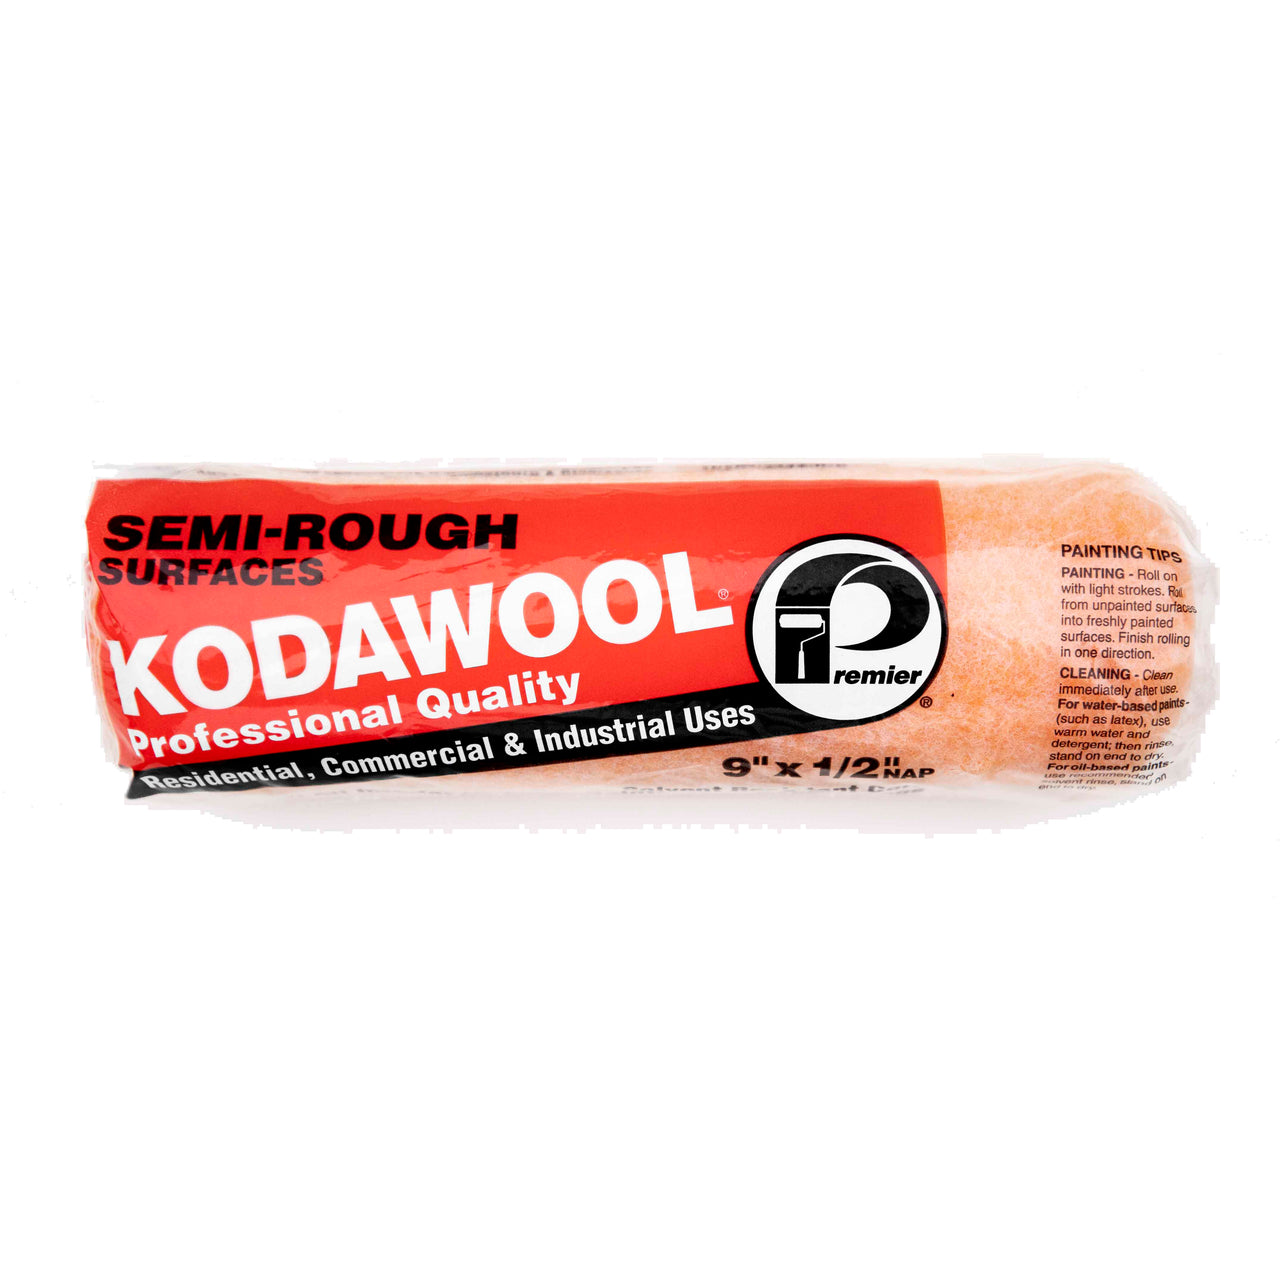 Kodawool 9" Roller Covers